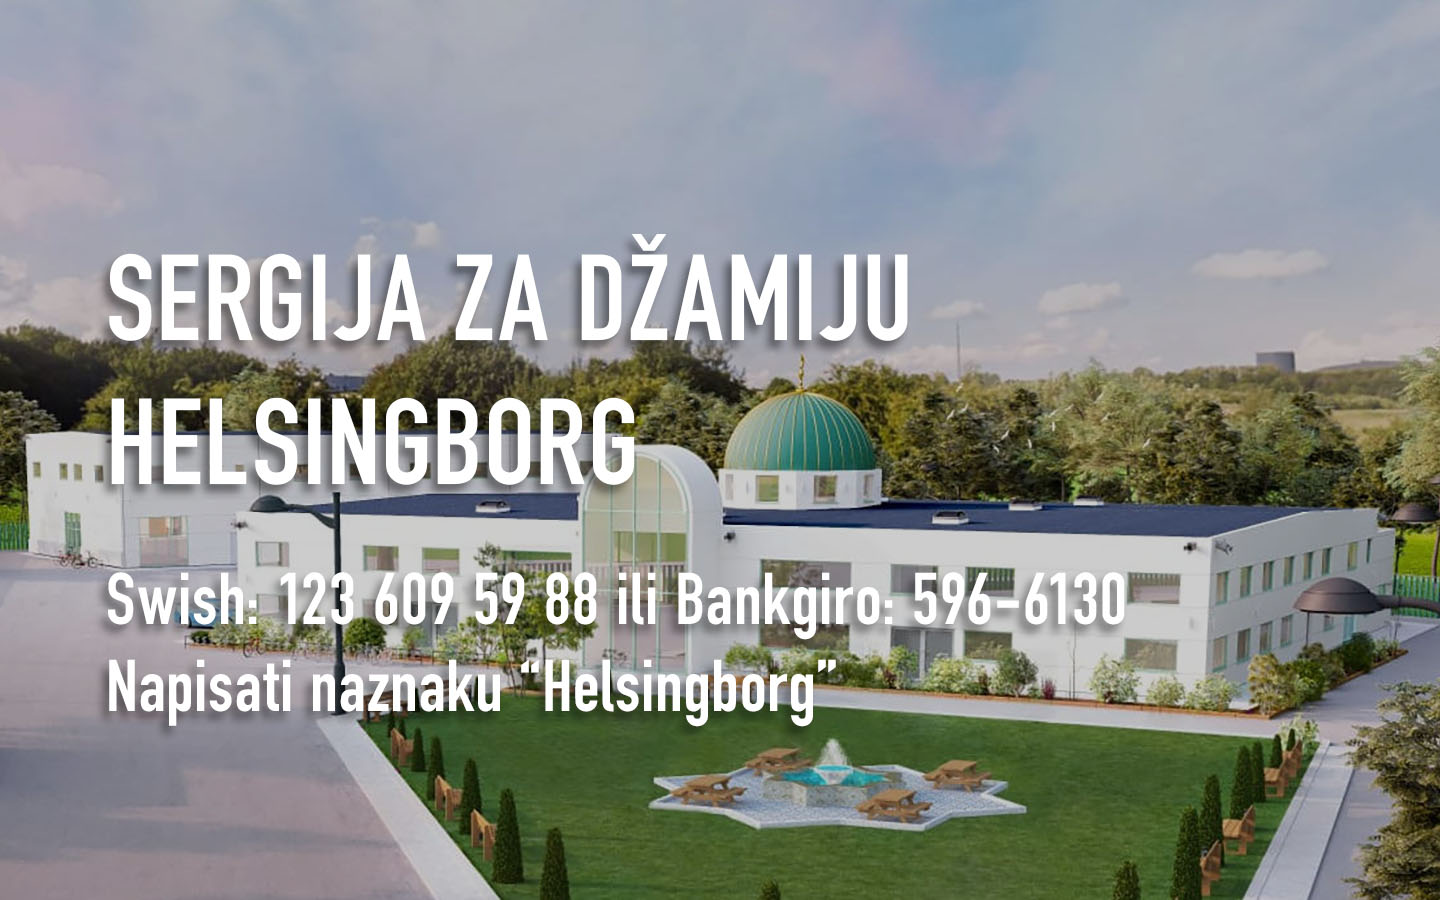 Sergija za džamiju u Helsingborgu